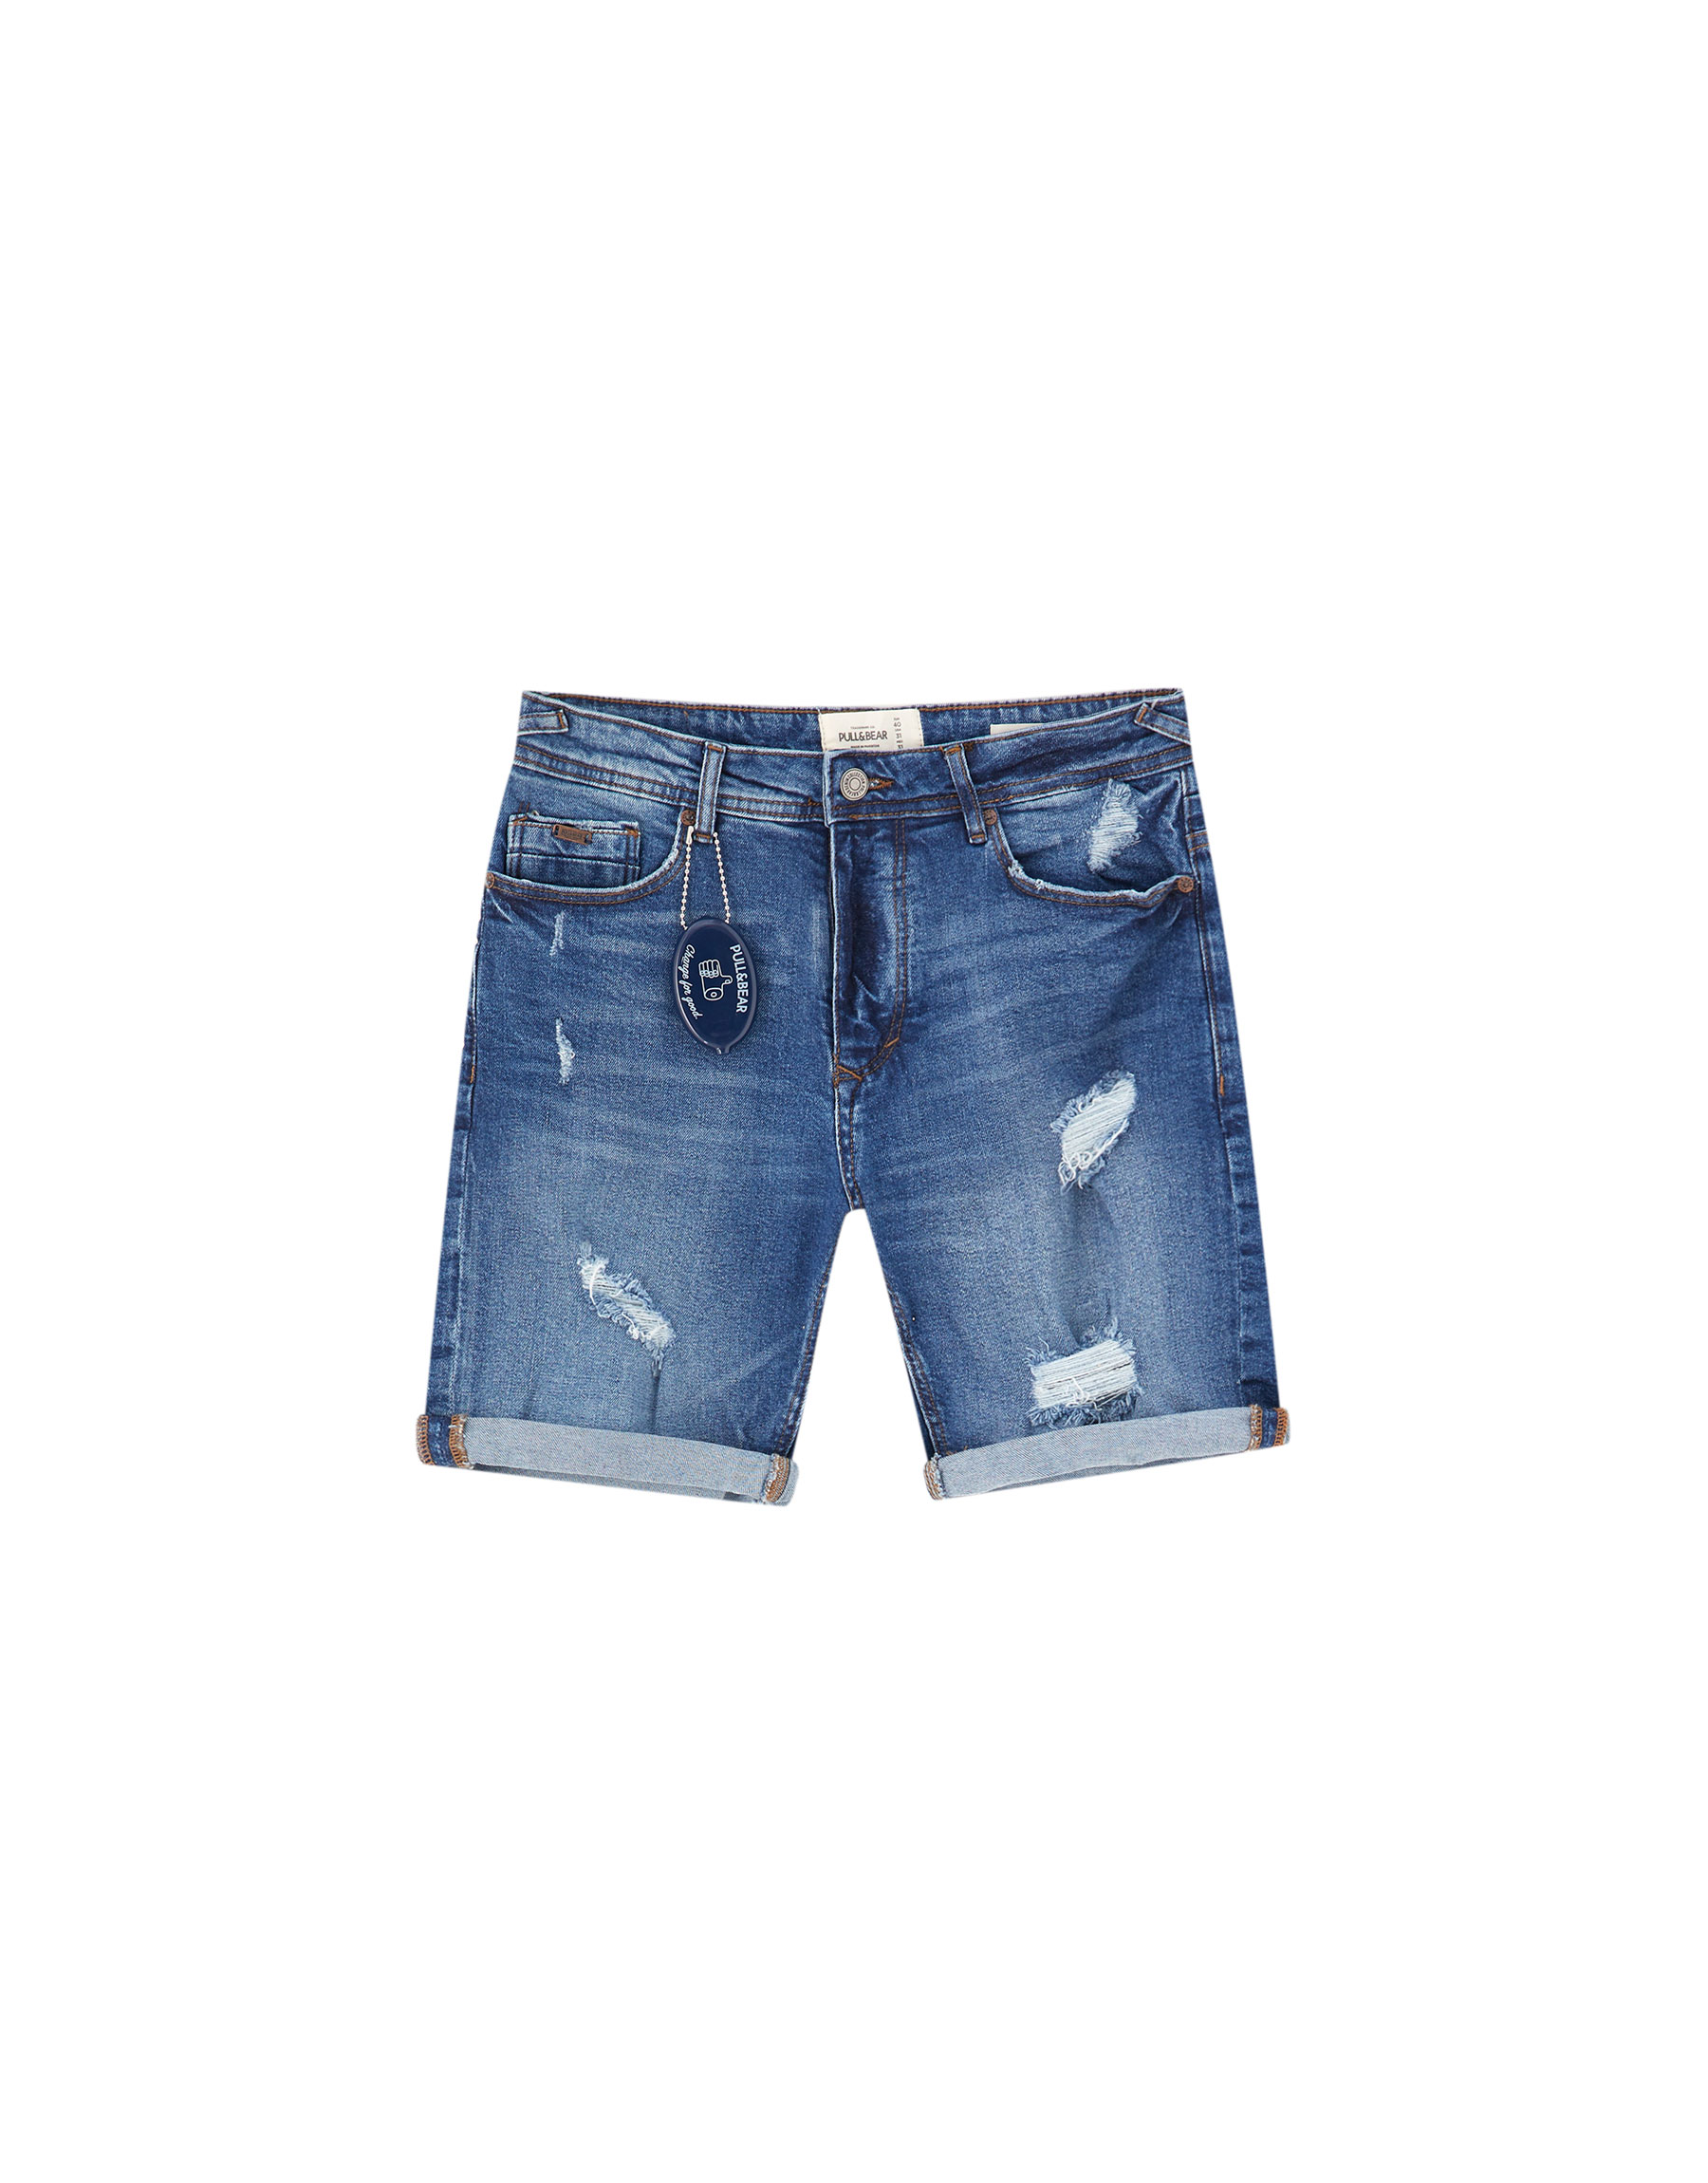 Базовые джинсовые шорты с разрывами ИНДИГО Pull & Bear